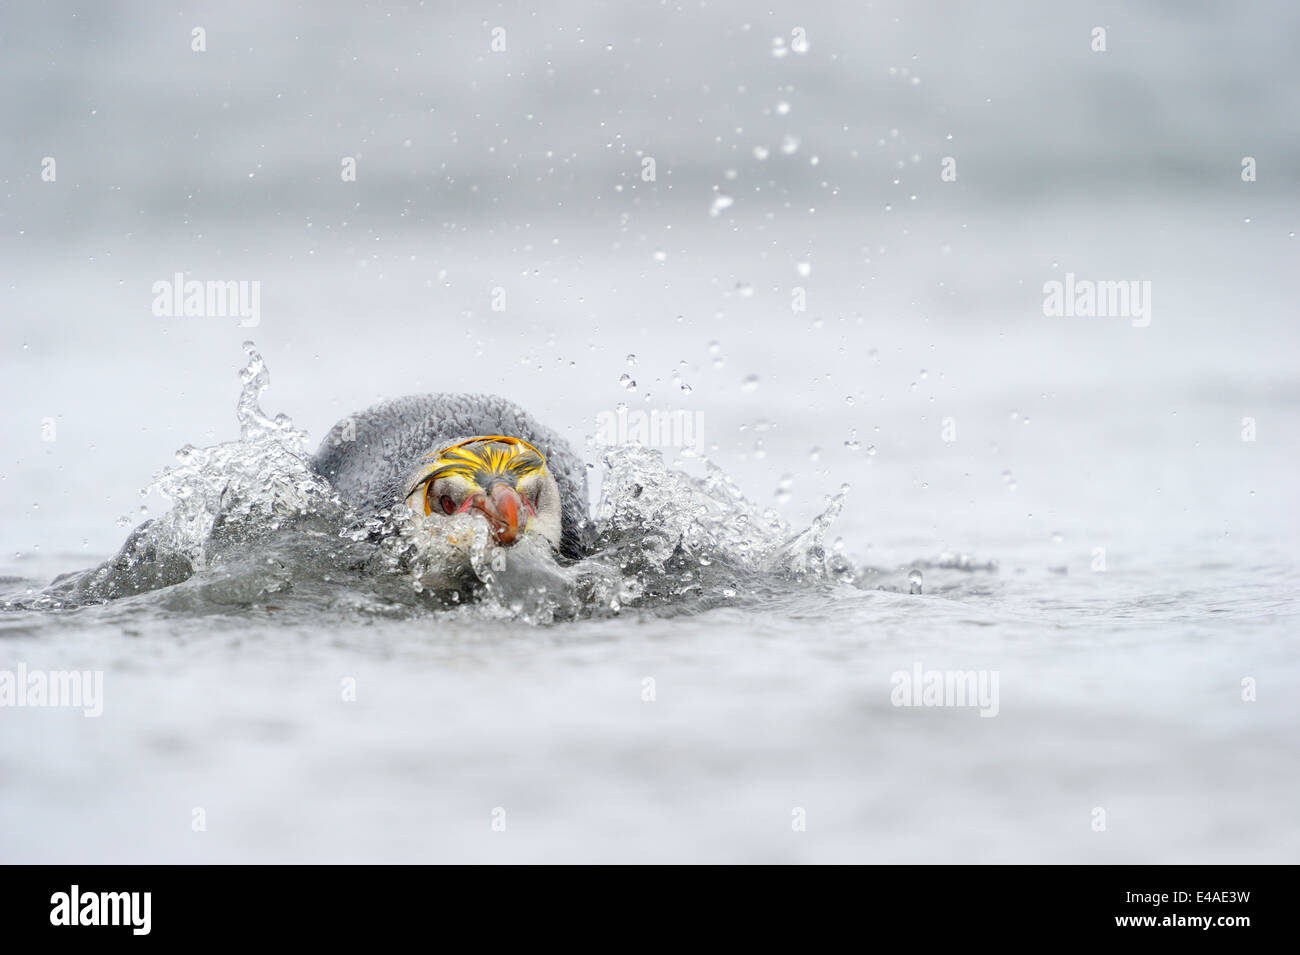 Manchot royal (Eudyptes schlegeli) sautant de l'eau dans l'île Macquarie, sous les eaux de l'Antarctique de l'Australie. Banque D'Images